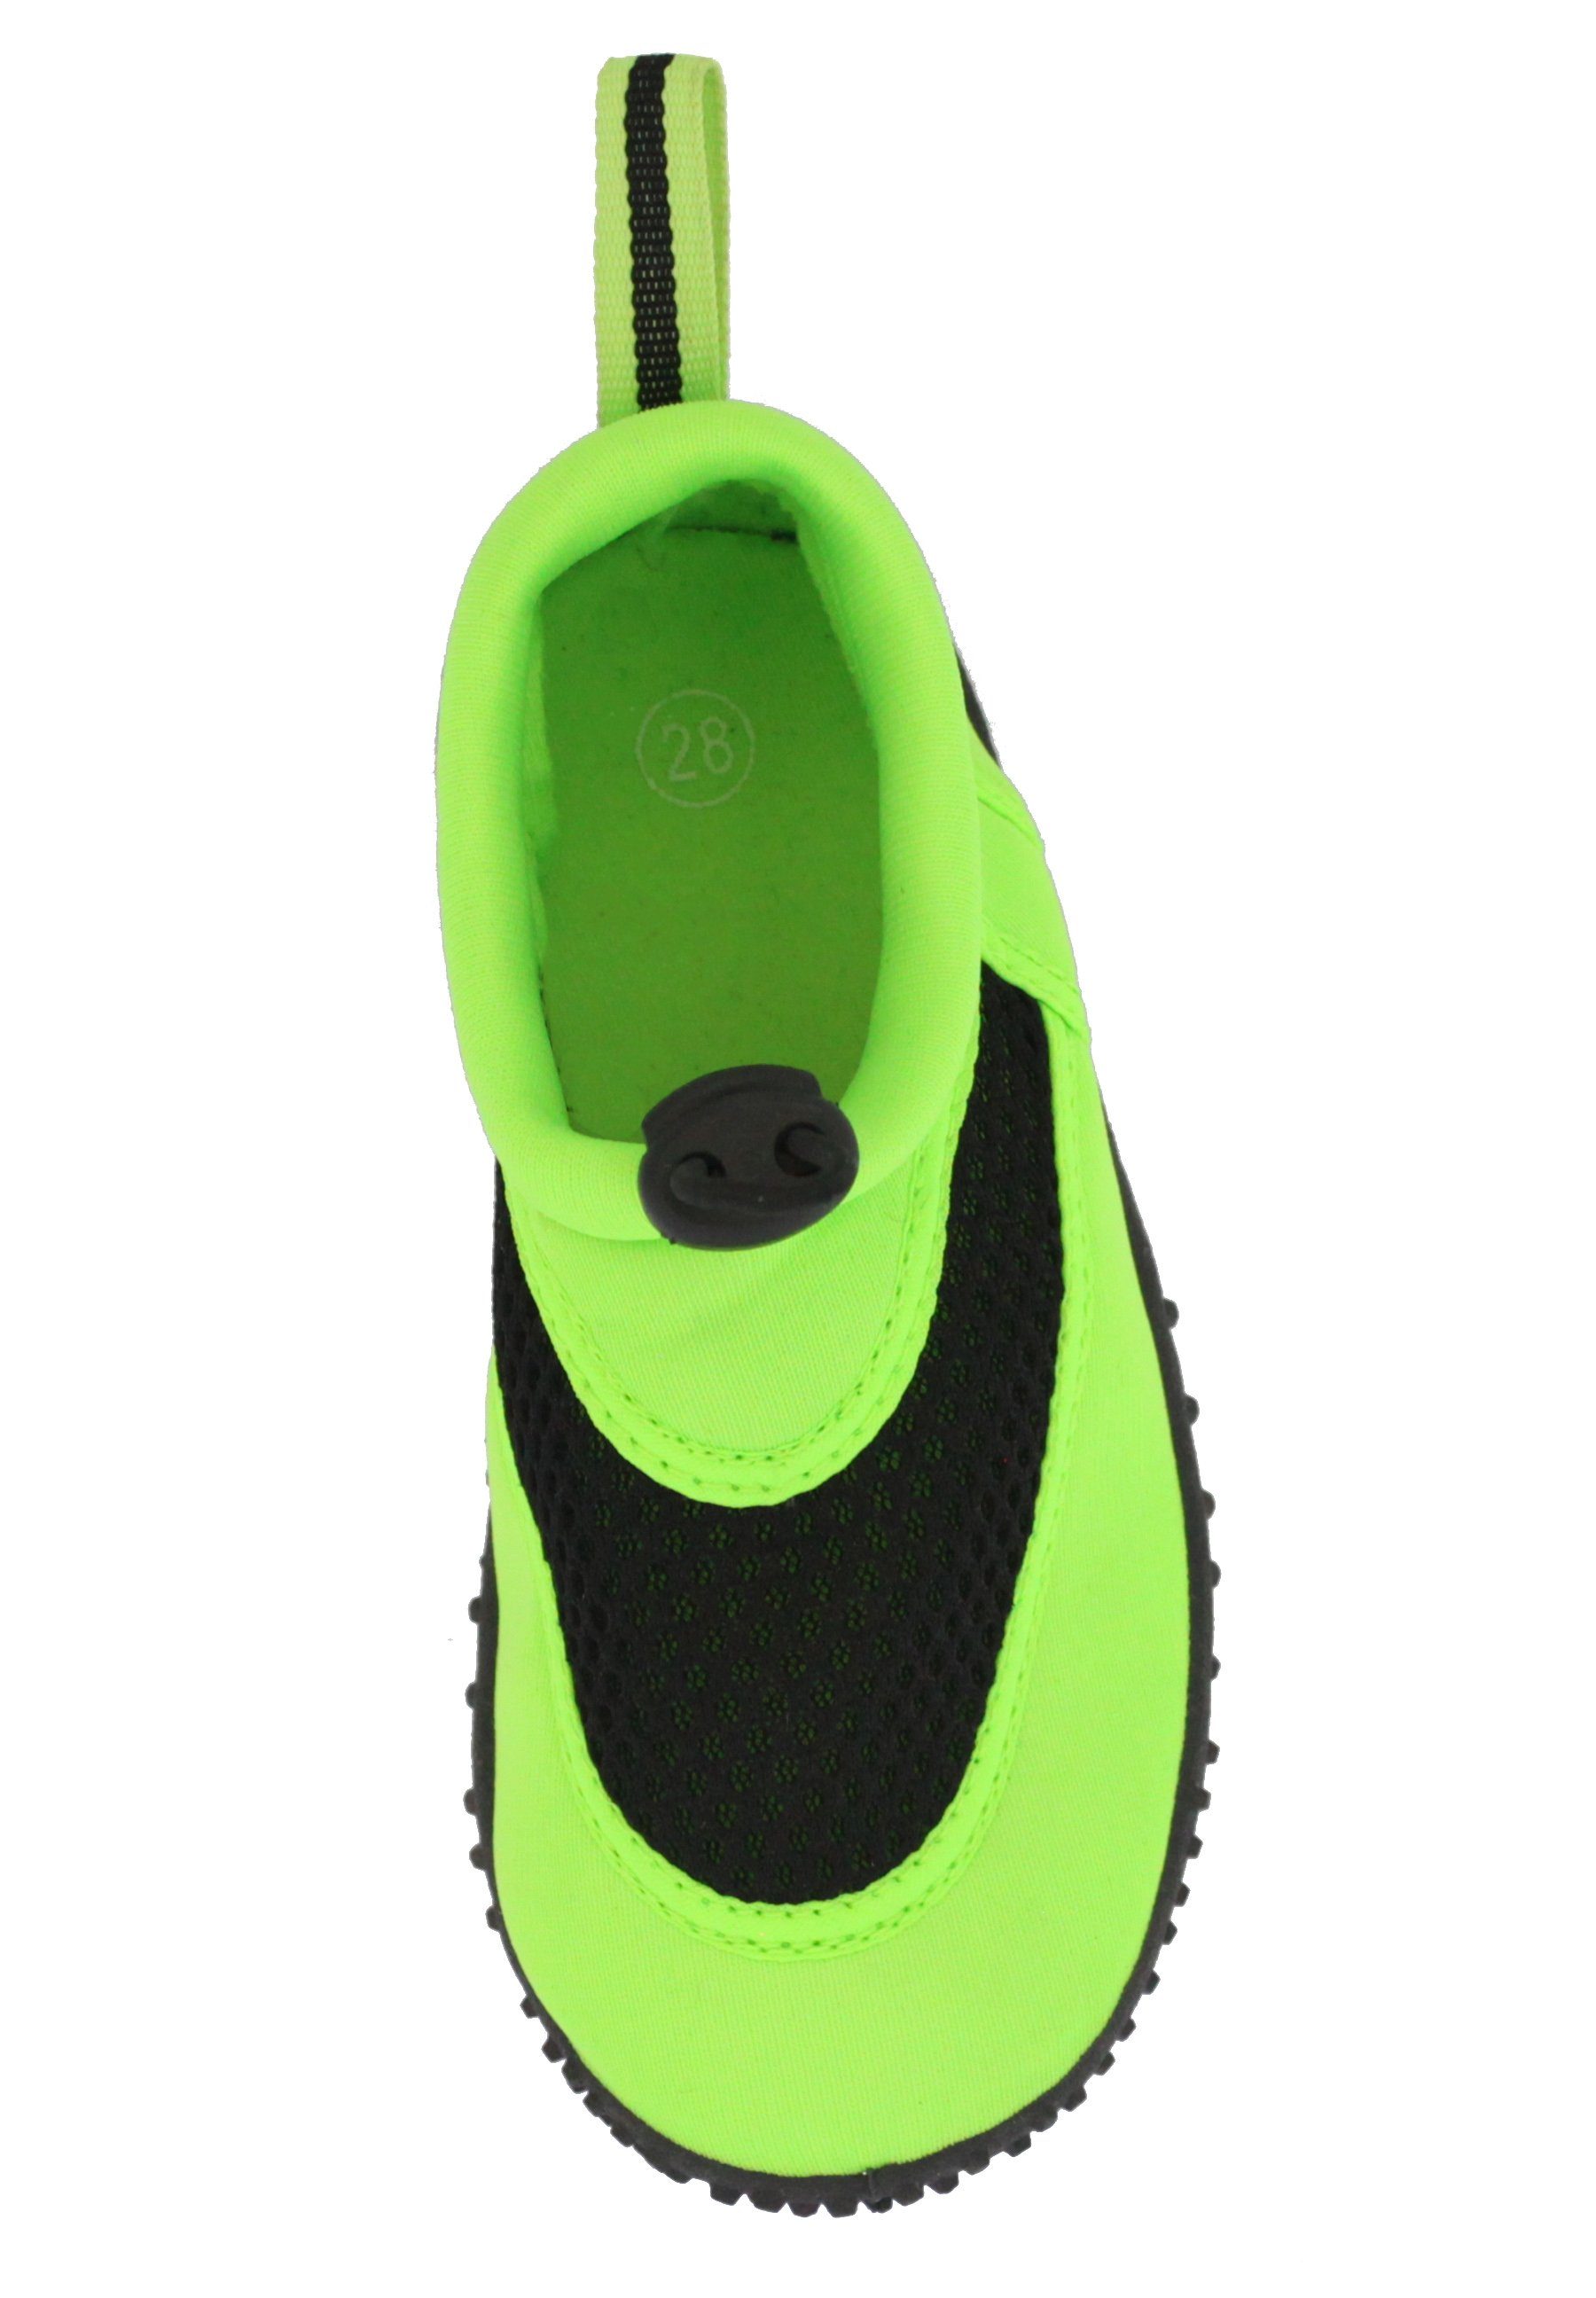 flexible Aqua Beck flexible, Schuhe, schnelltrocknend (leichte, Füße grün stabile und geschützte Laufsohle, an Pool Strand) für Badeschuh Badeschuh rutschfeste